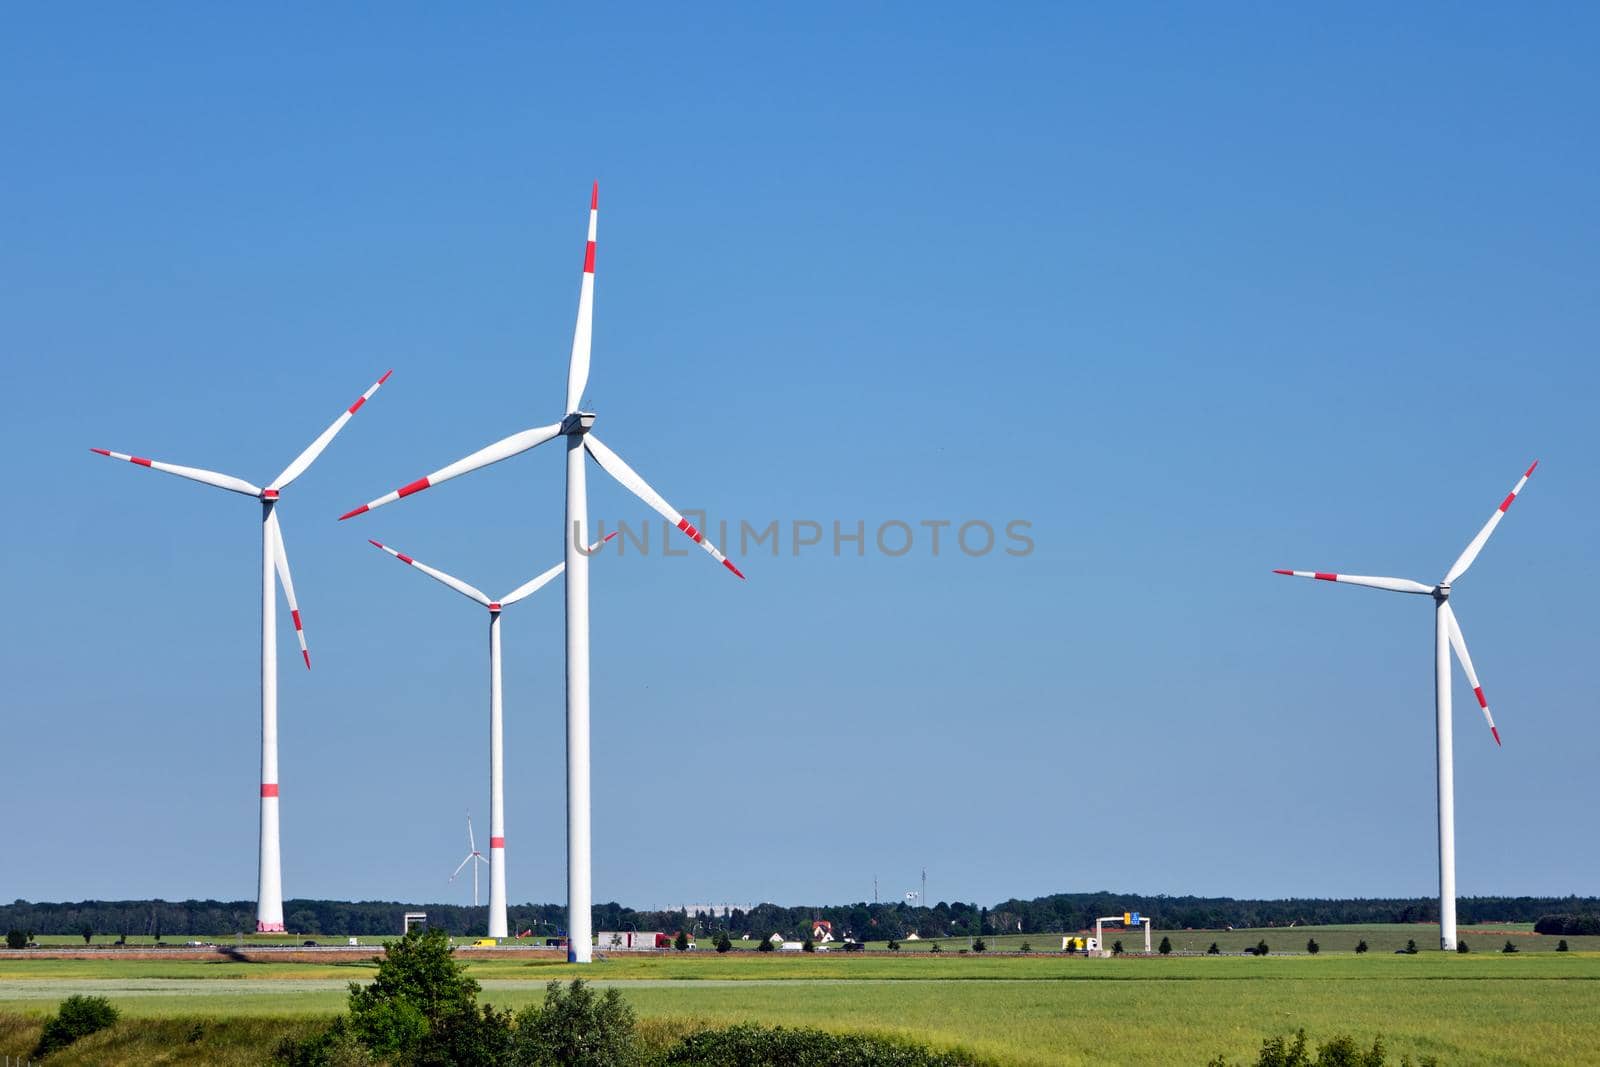 Modern wind turbines in a rural landscape seen in Germany